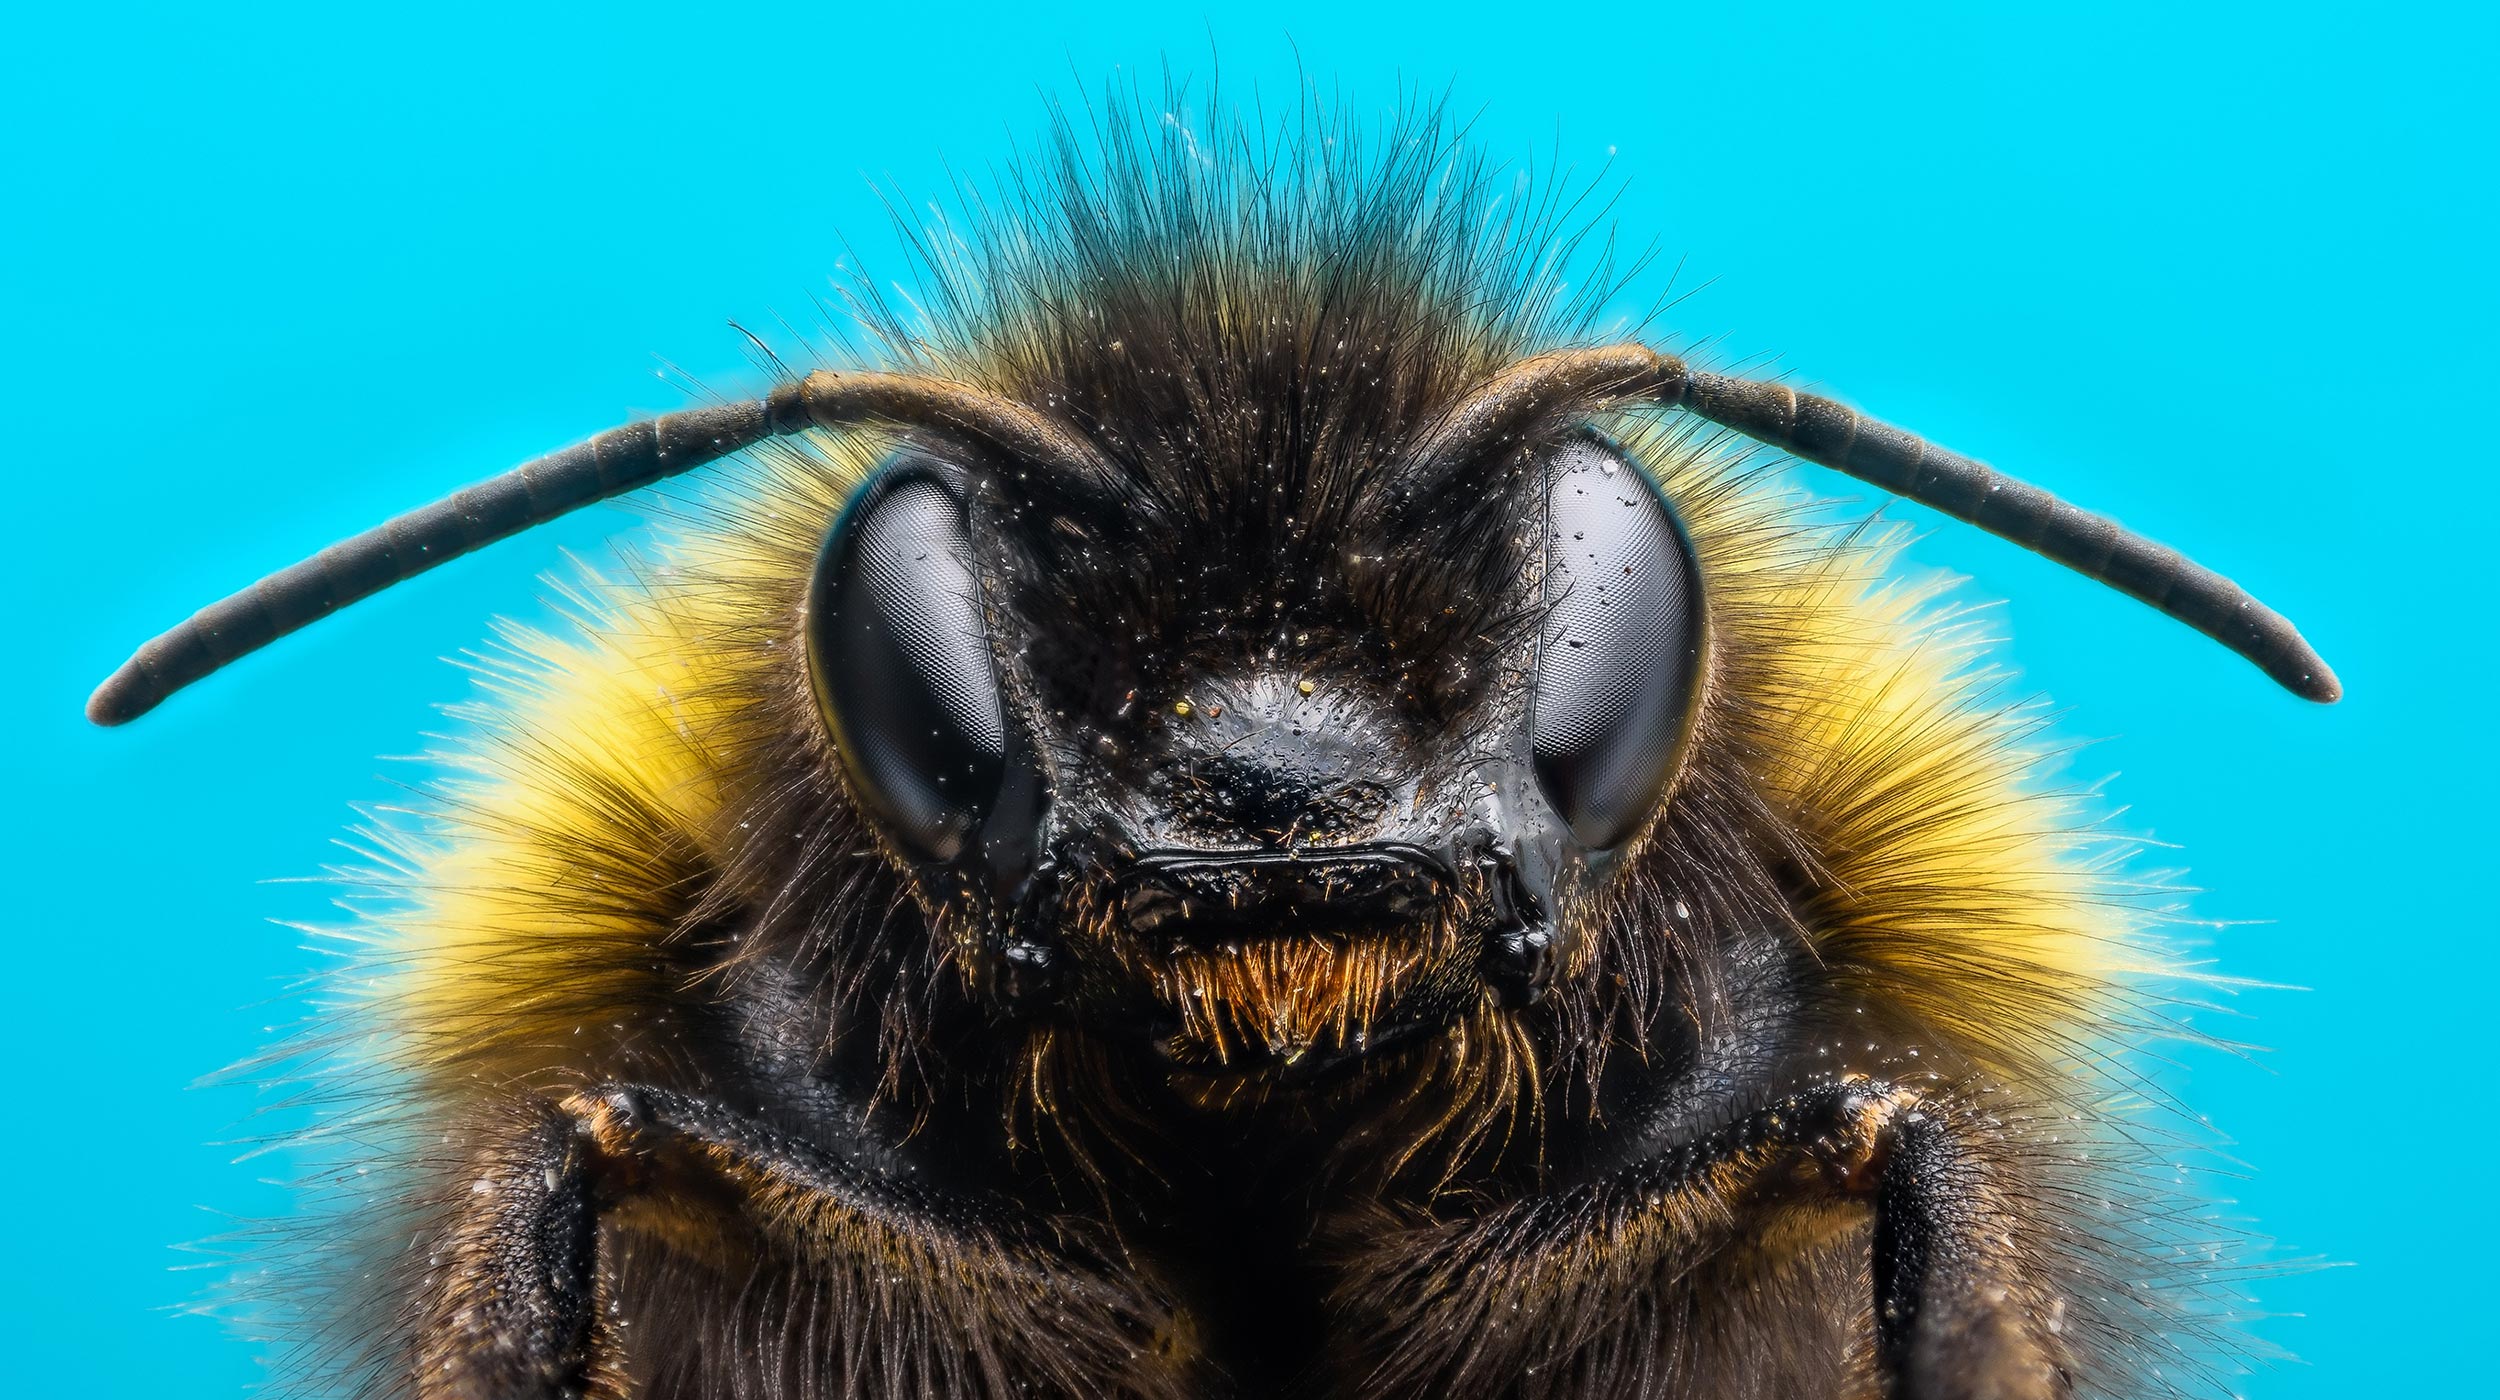 Hummeln lernen, Rätsel zu lösen, indem sie andere Bienen beobachten